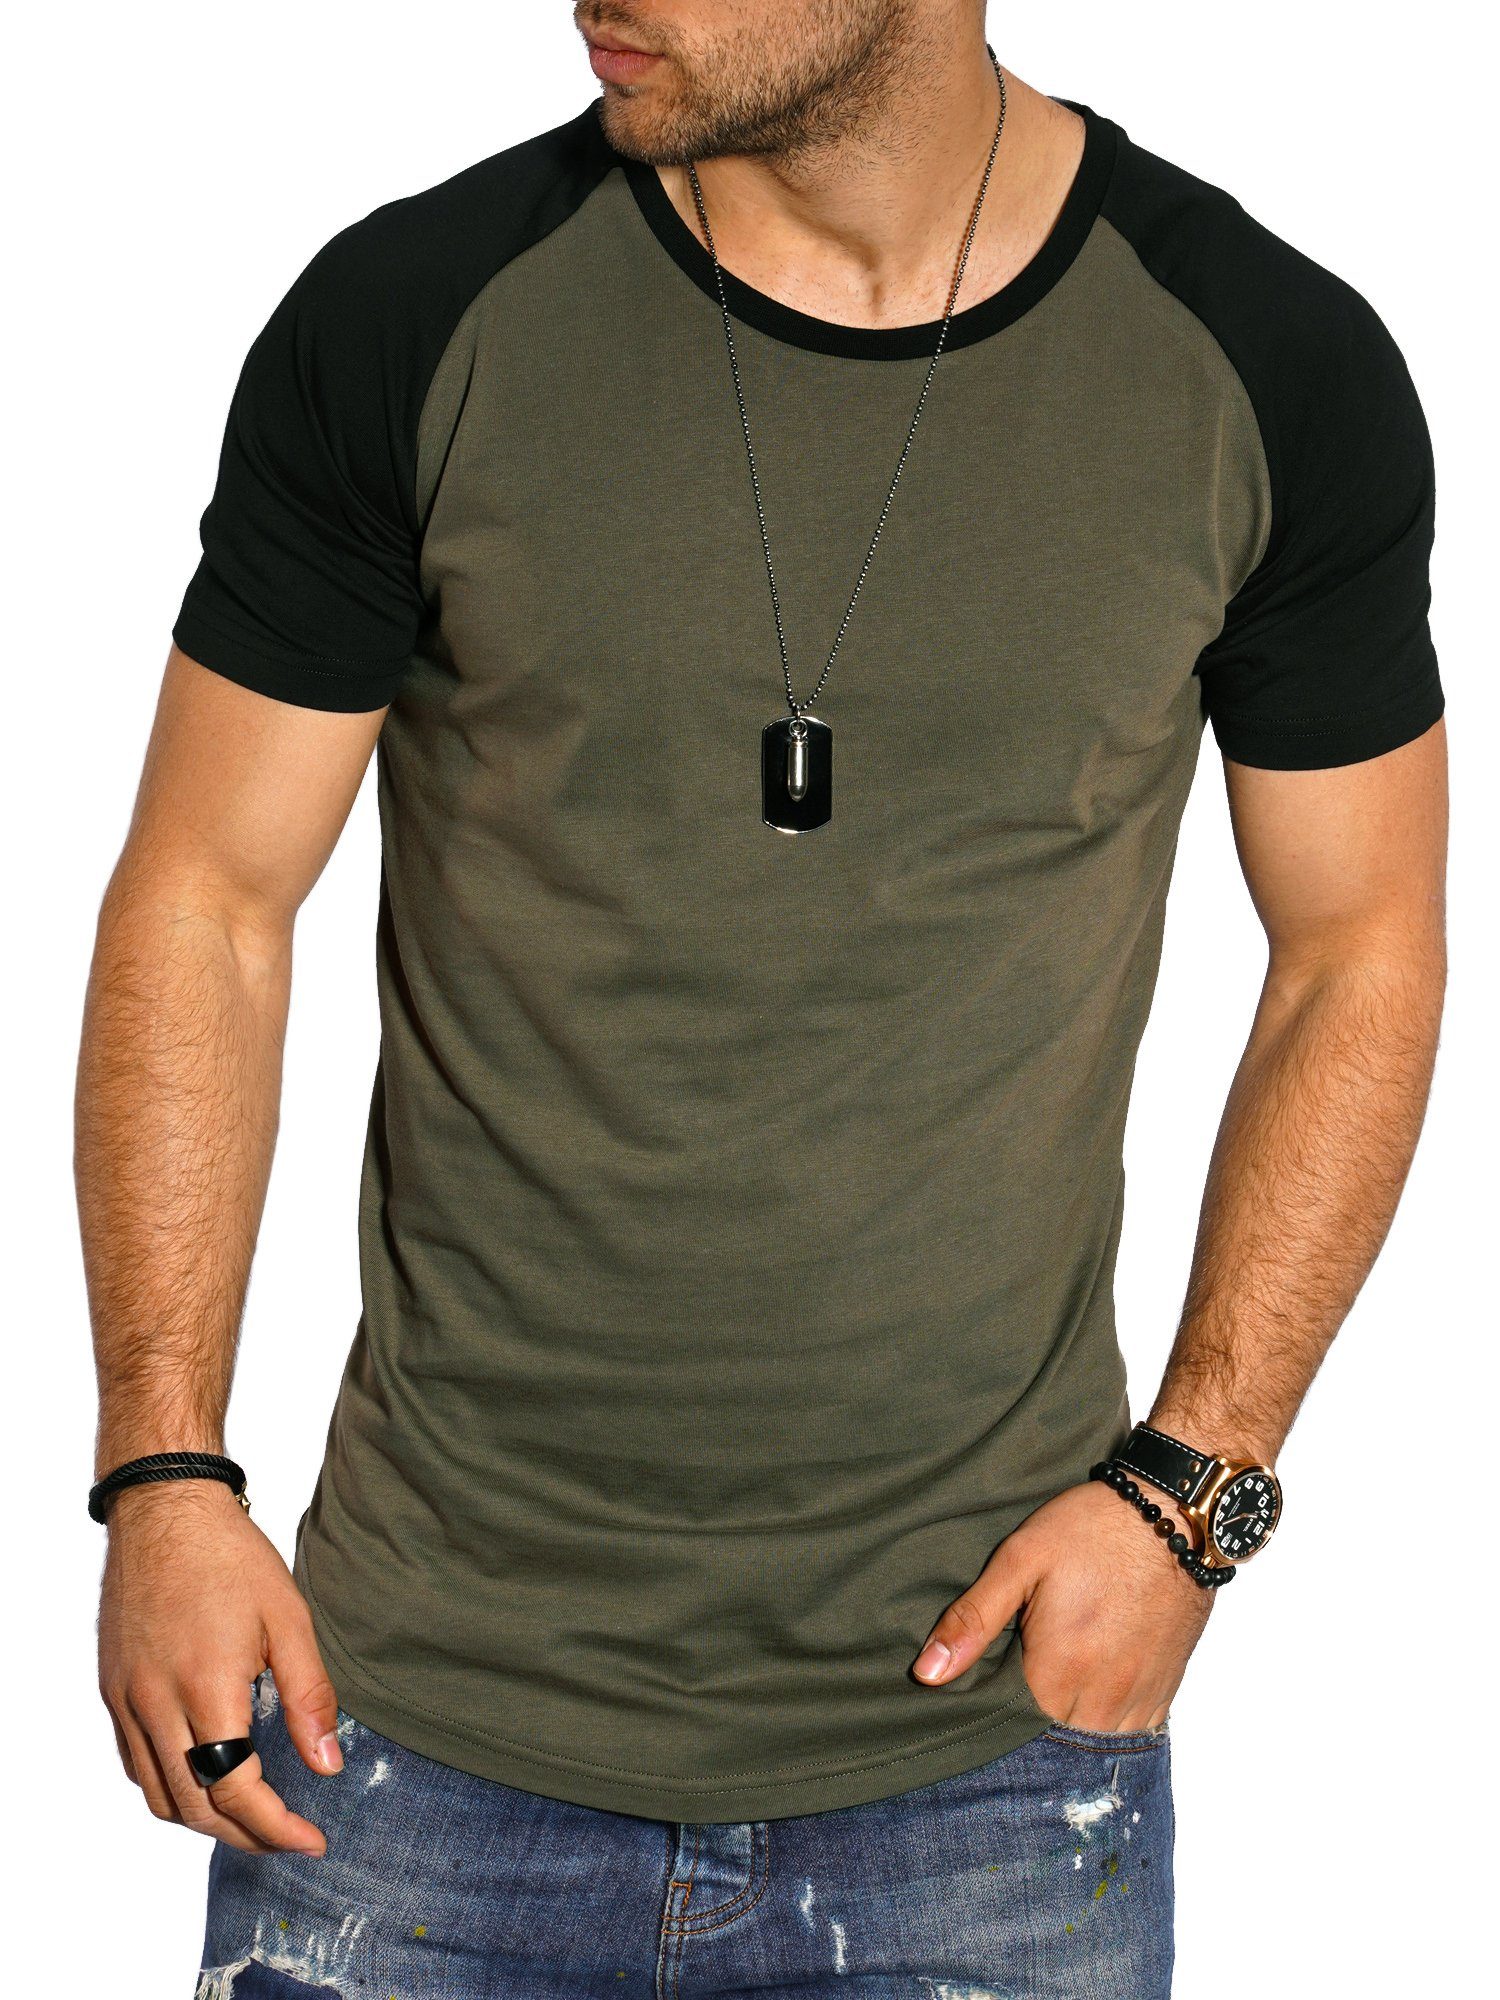 T-Shirt Khaki-Schwarz im Raglan-Stil Style-Division SDBOISE Basic